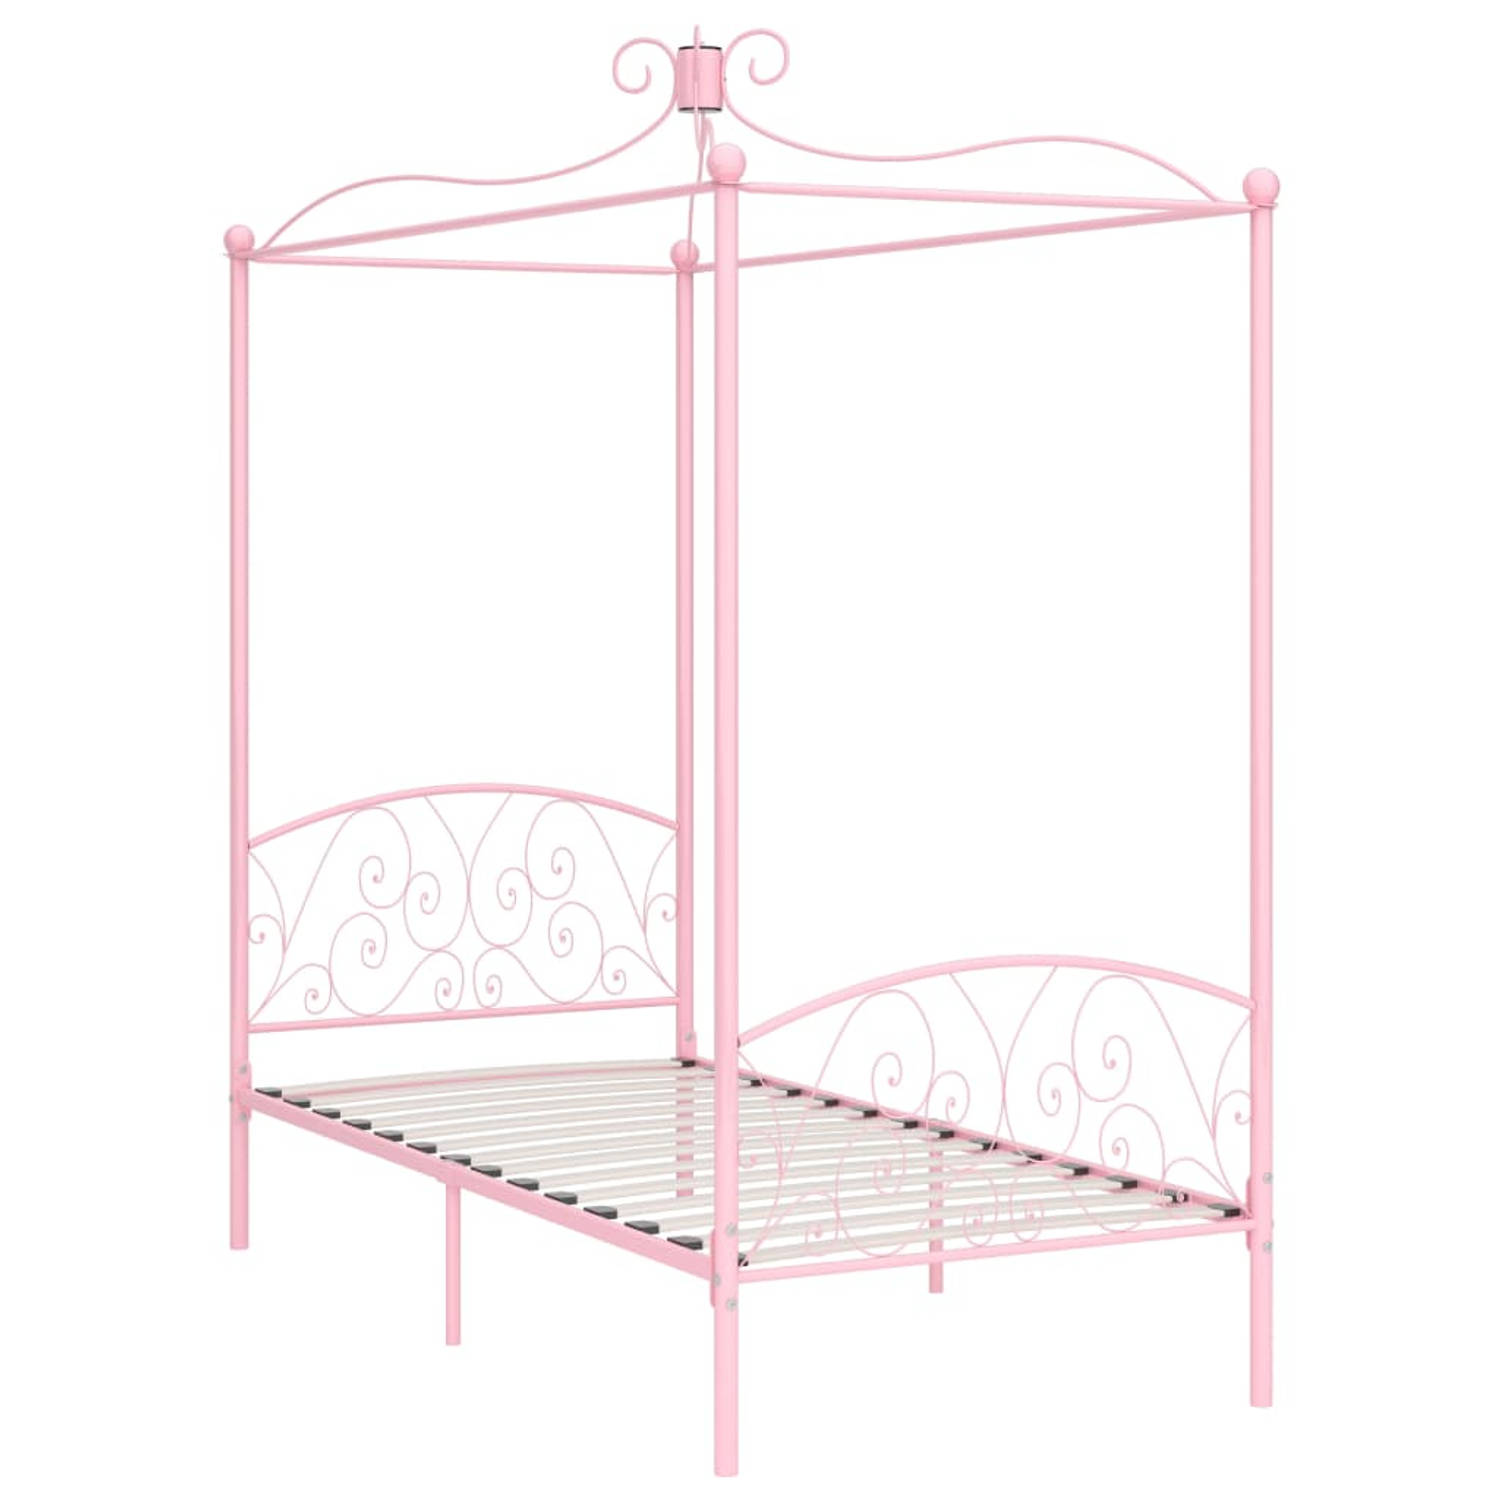 The Living Store Hemelbedframe metaal roze 100x200 cm - Bed